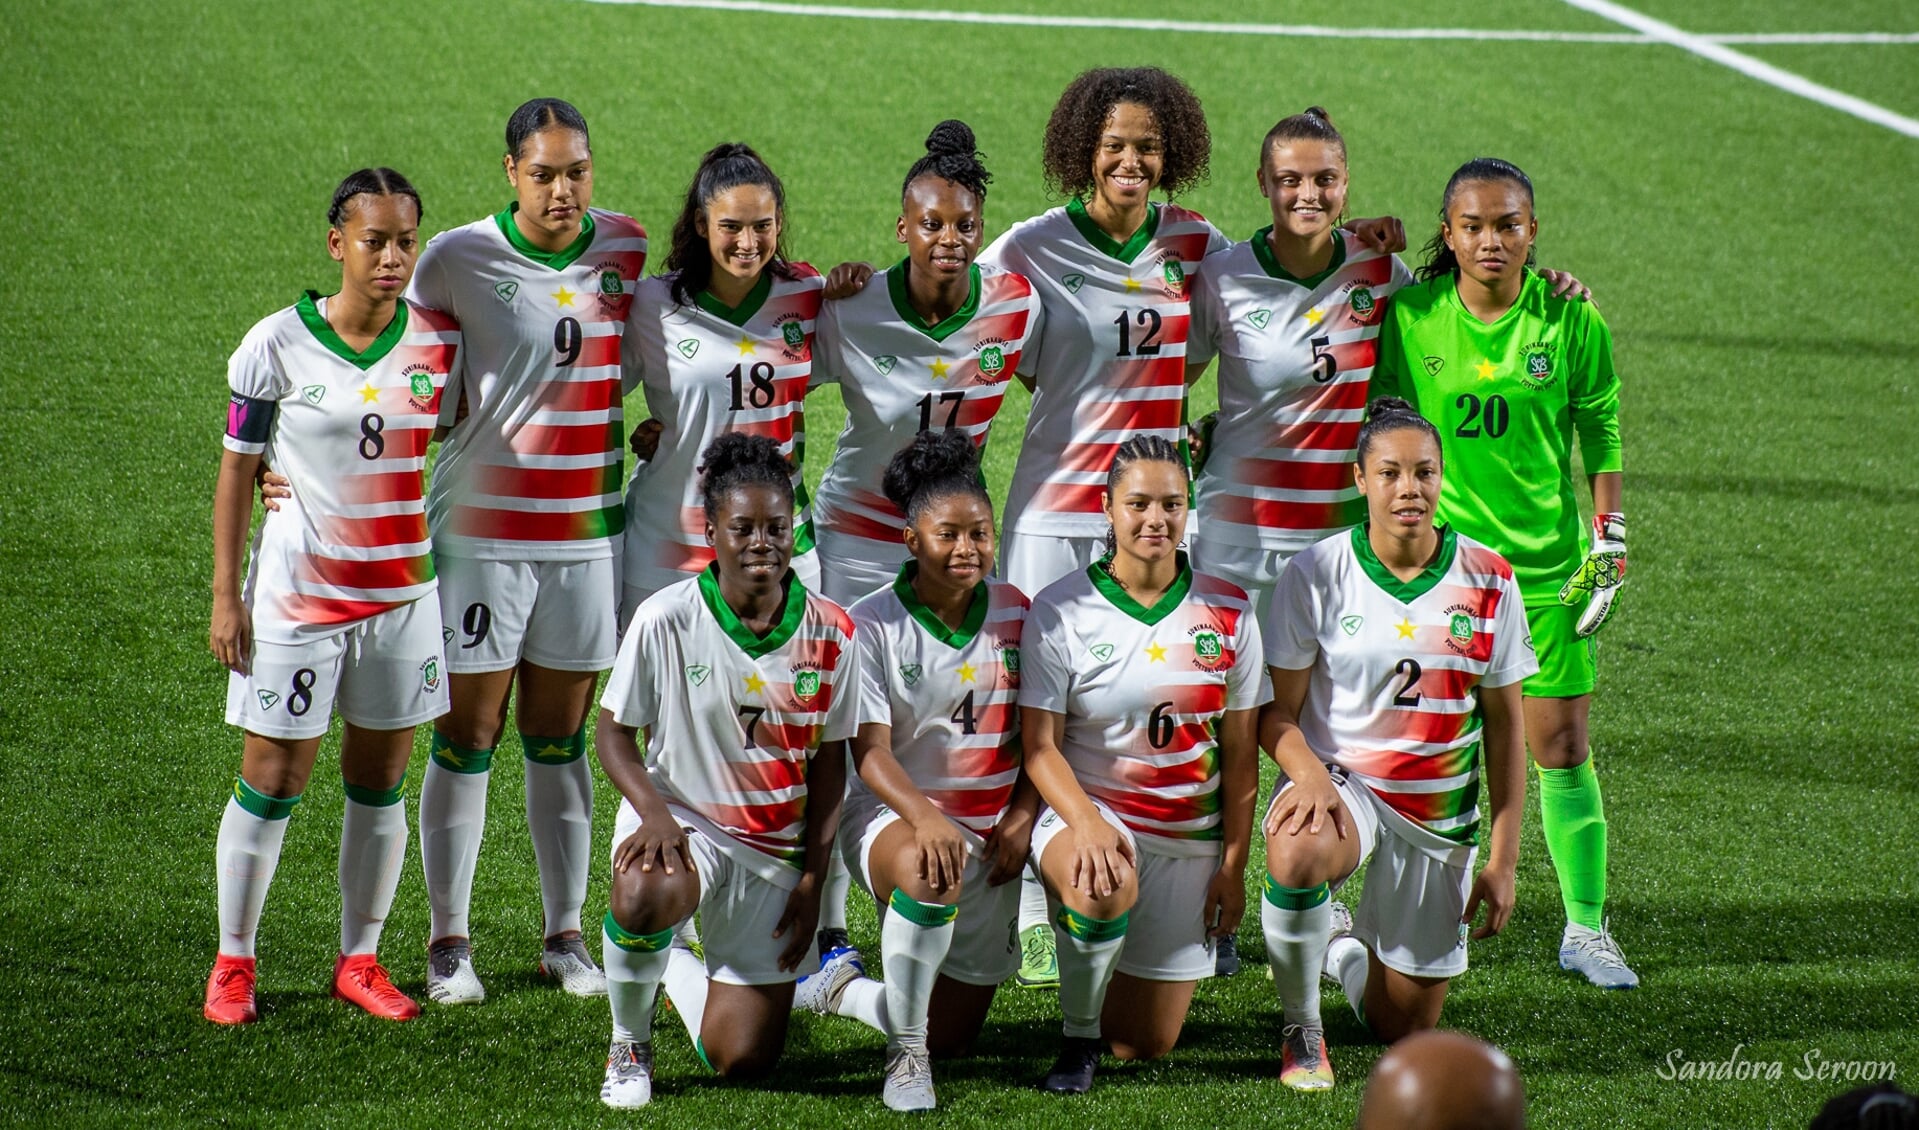 Katoucha Patra (staand in midden, nummer 17) met haar ploeggenoten van Suriname.